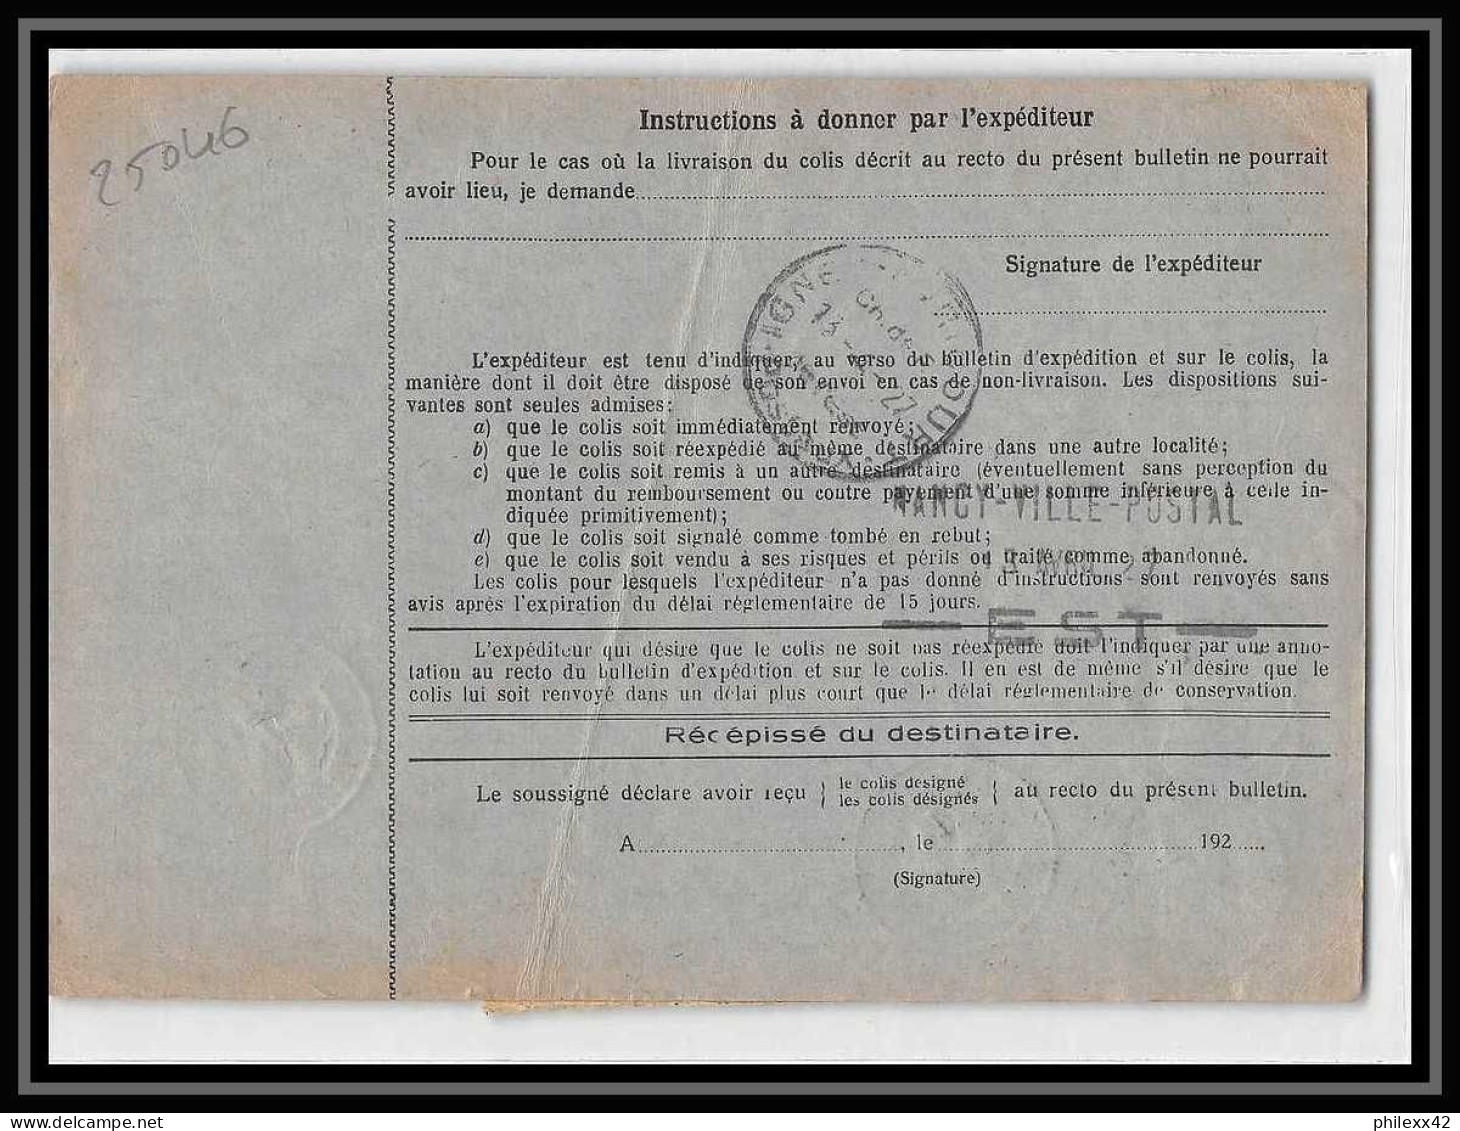 25046 Bulletin D'expédition France Colis Postaux Fiscal Haut Rhin 1927 Strasbourg Semeuse + Merson 145 Alsace-Lorraine  - Covers & Documents